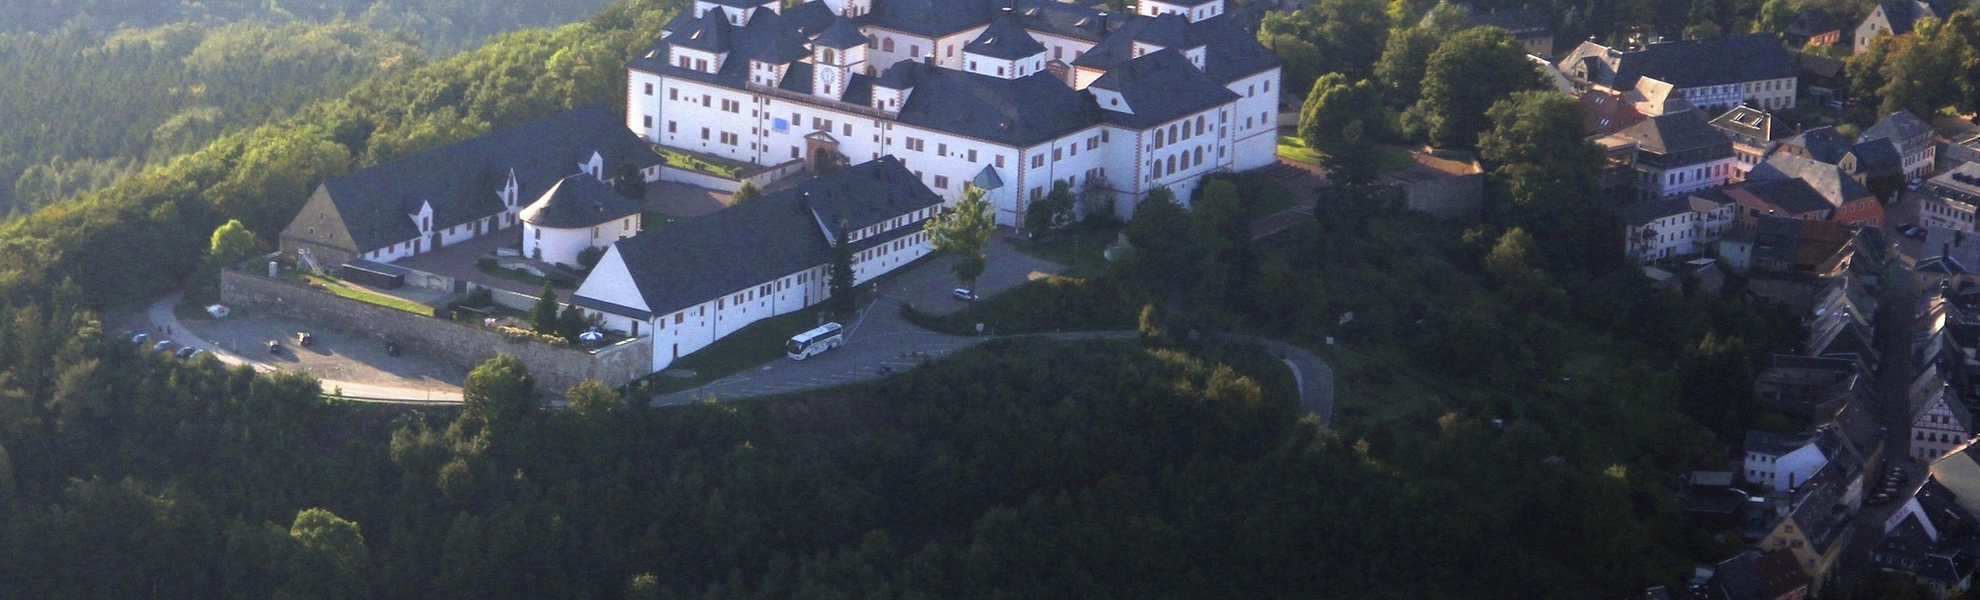 Schloss Augustusburg aus der Luft